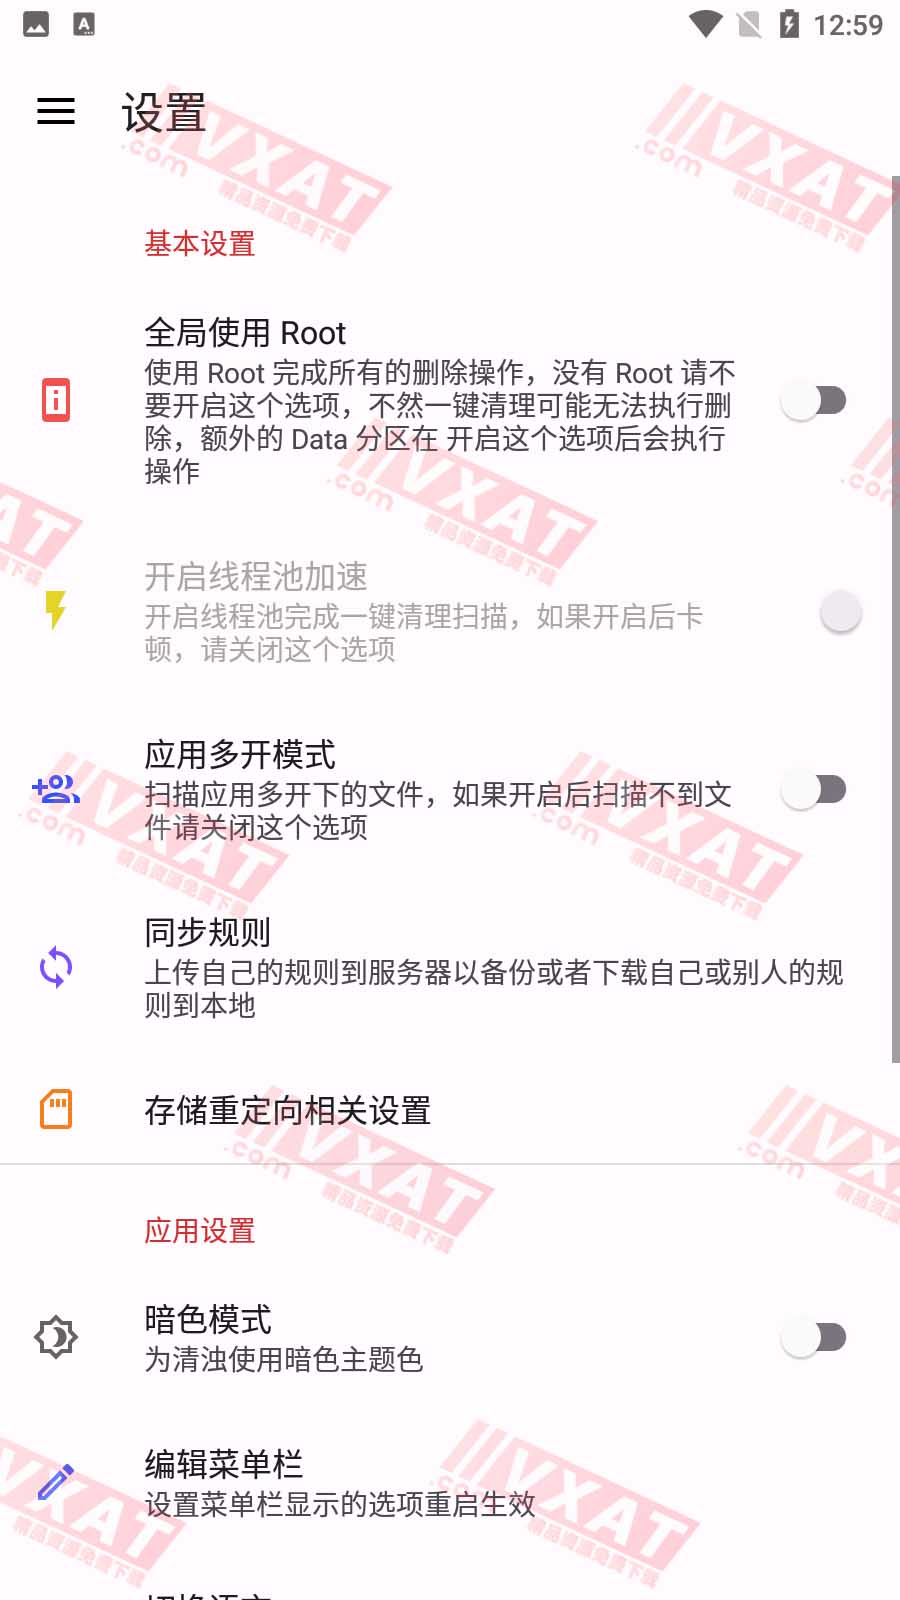 清浊 newYear-1 新年版 解锁高级功能 第2张